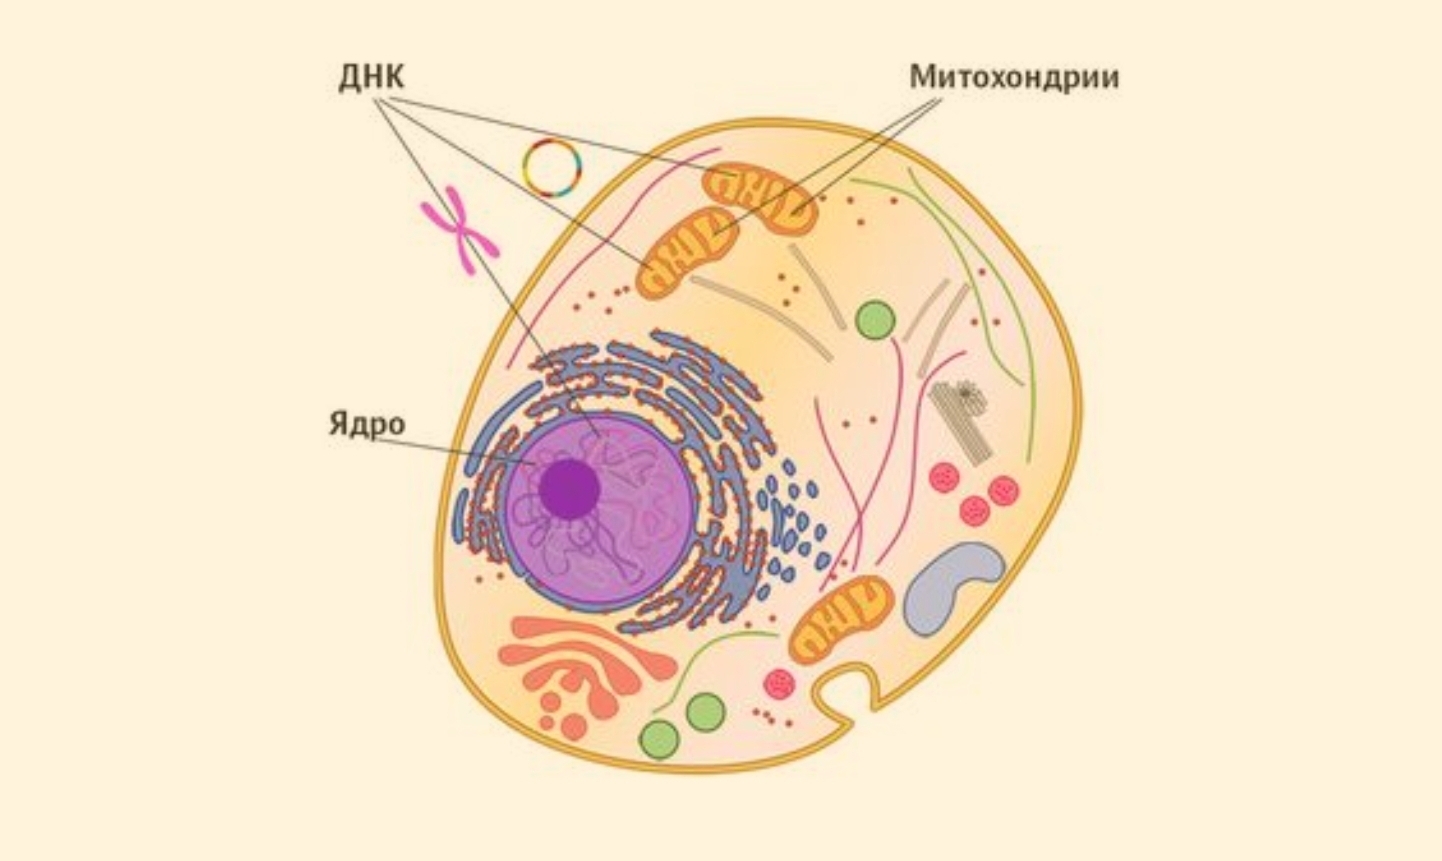 Клетки с гиперхромными ядрами. ДНК ядро и митохондрии.